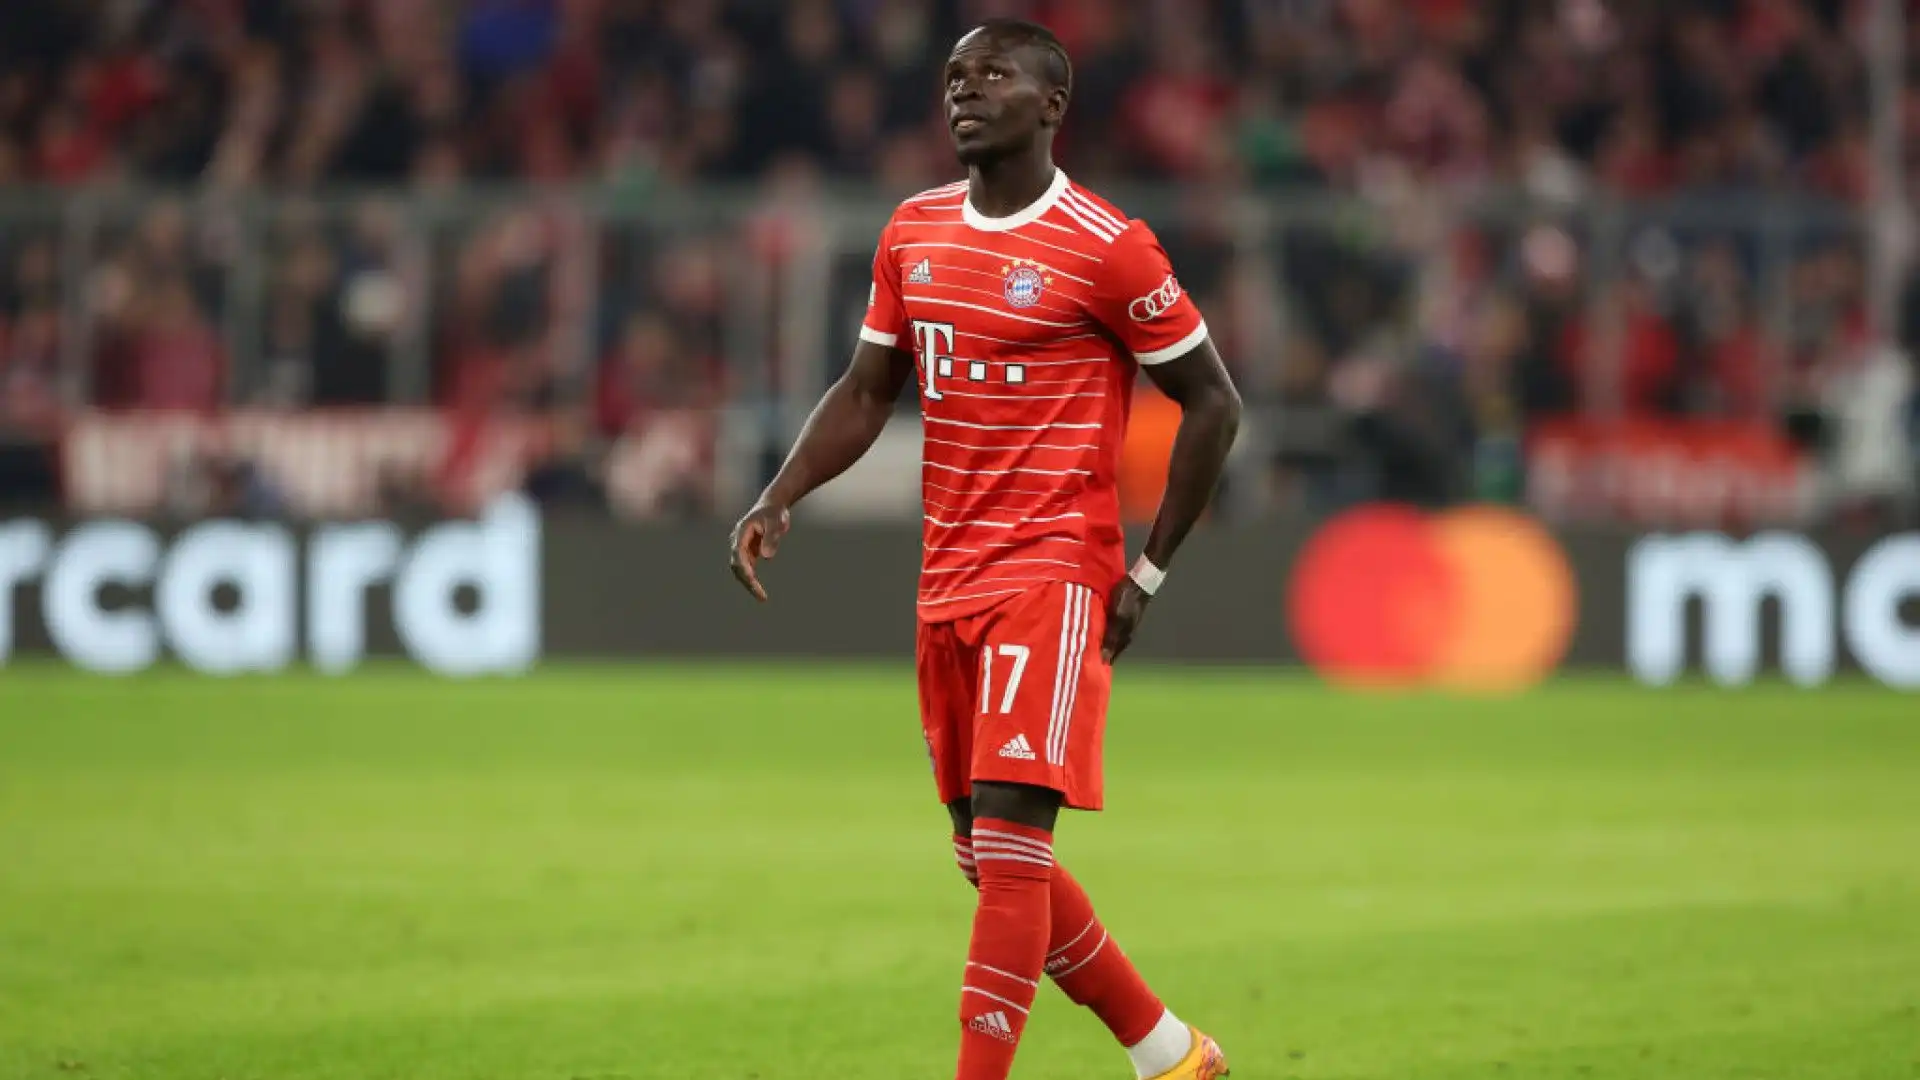 L'avventura del senegalese al Bayern Monaco potrebbe terminare dopo solo una stagione